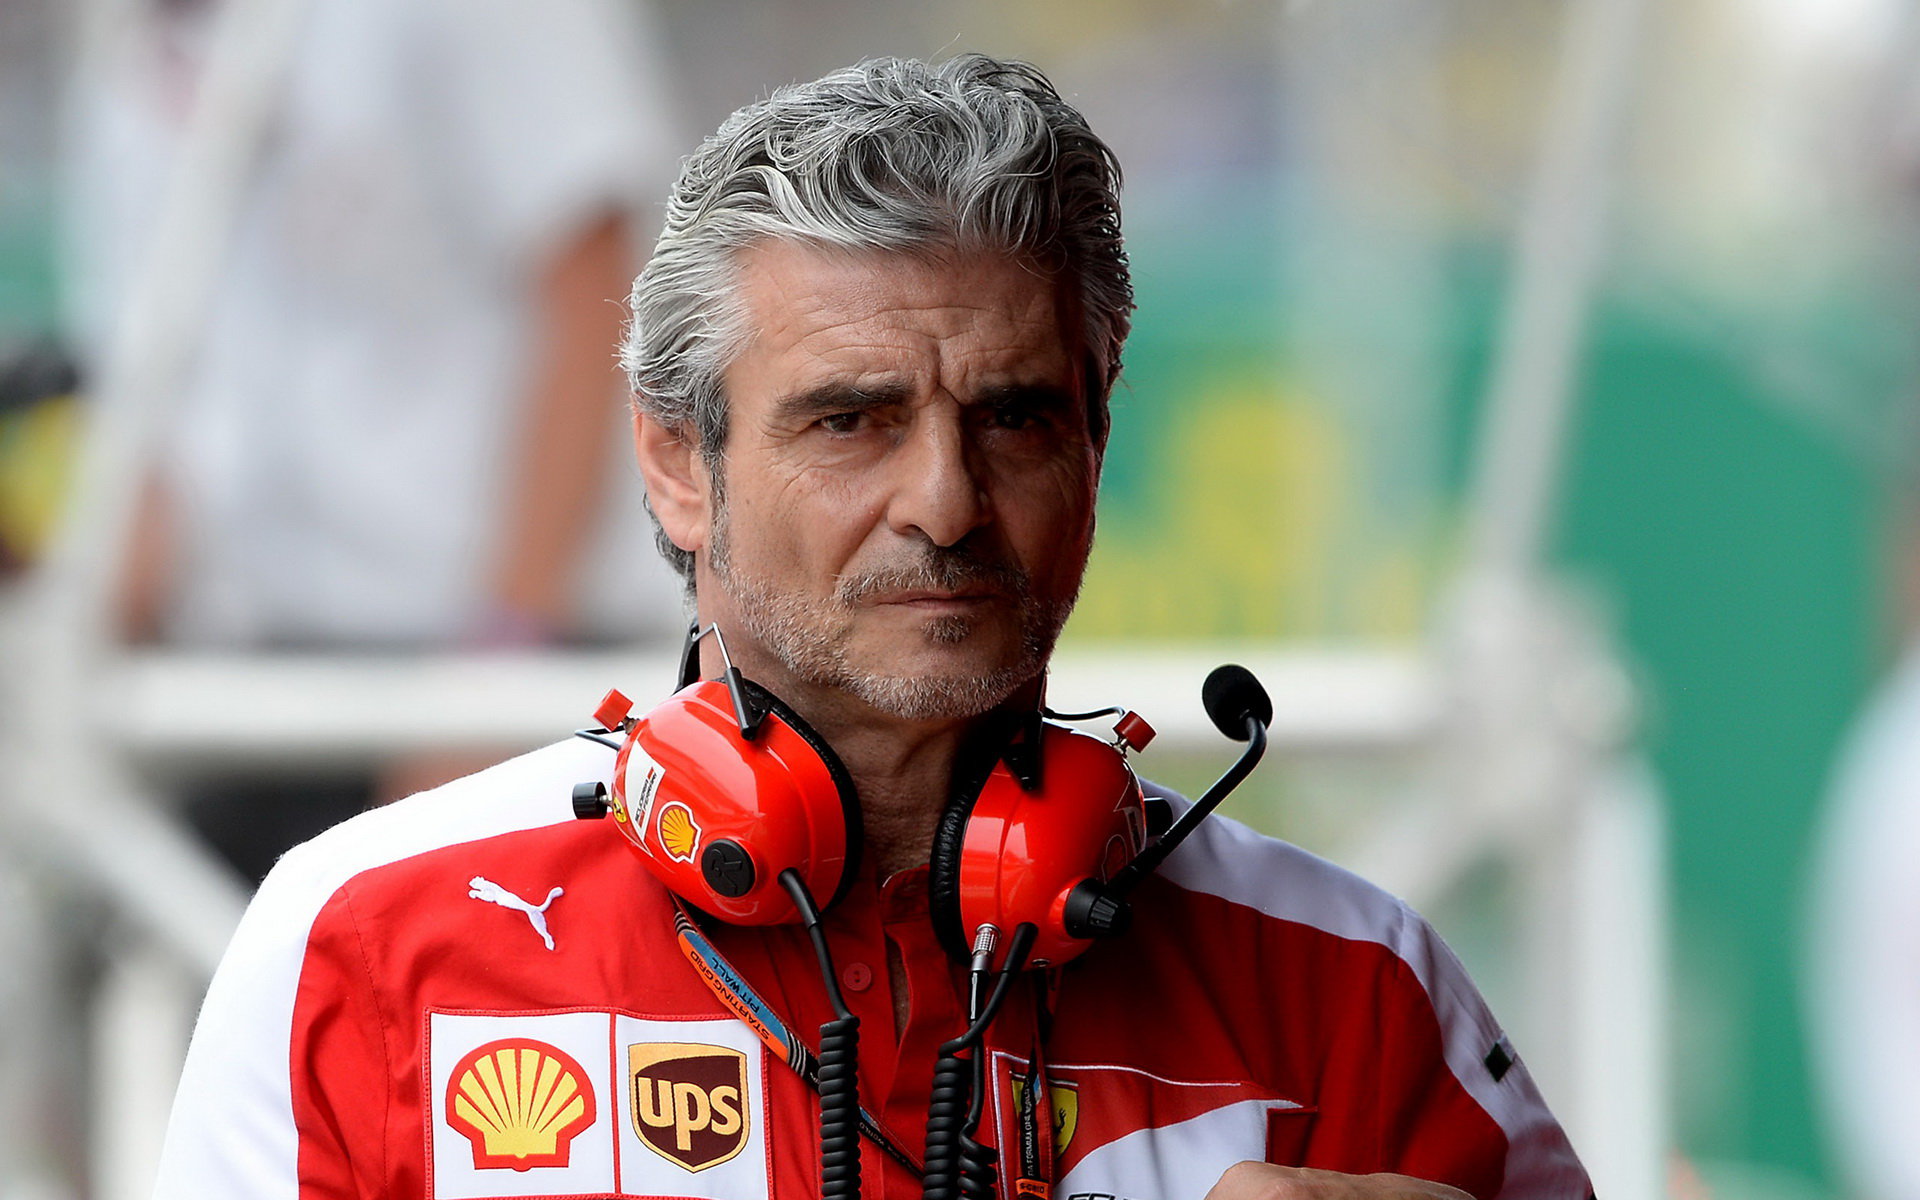 Maurizio Arrivabene má tentokrát o viníkovi kolize Kvjat - Vettel jasno